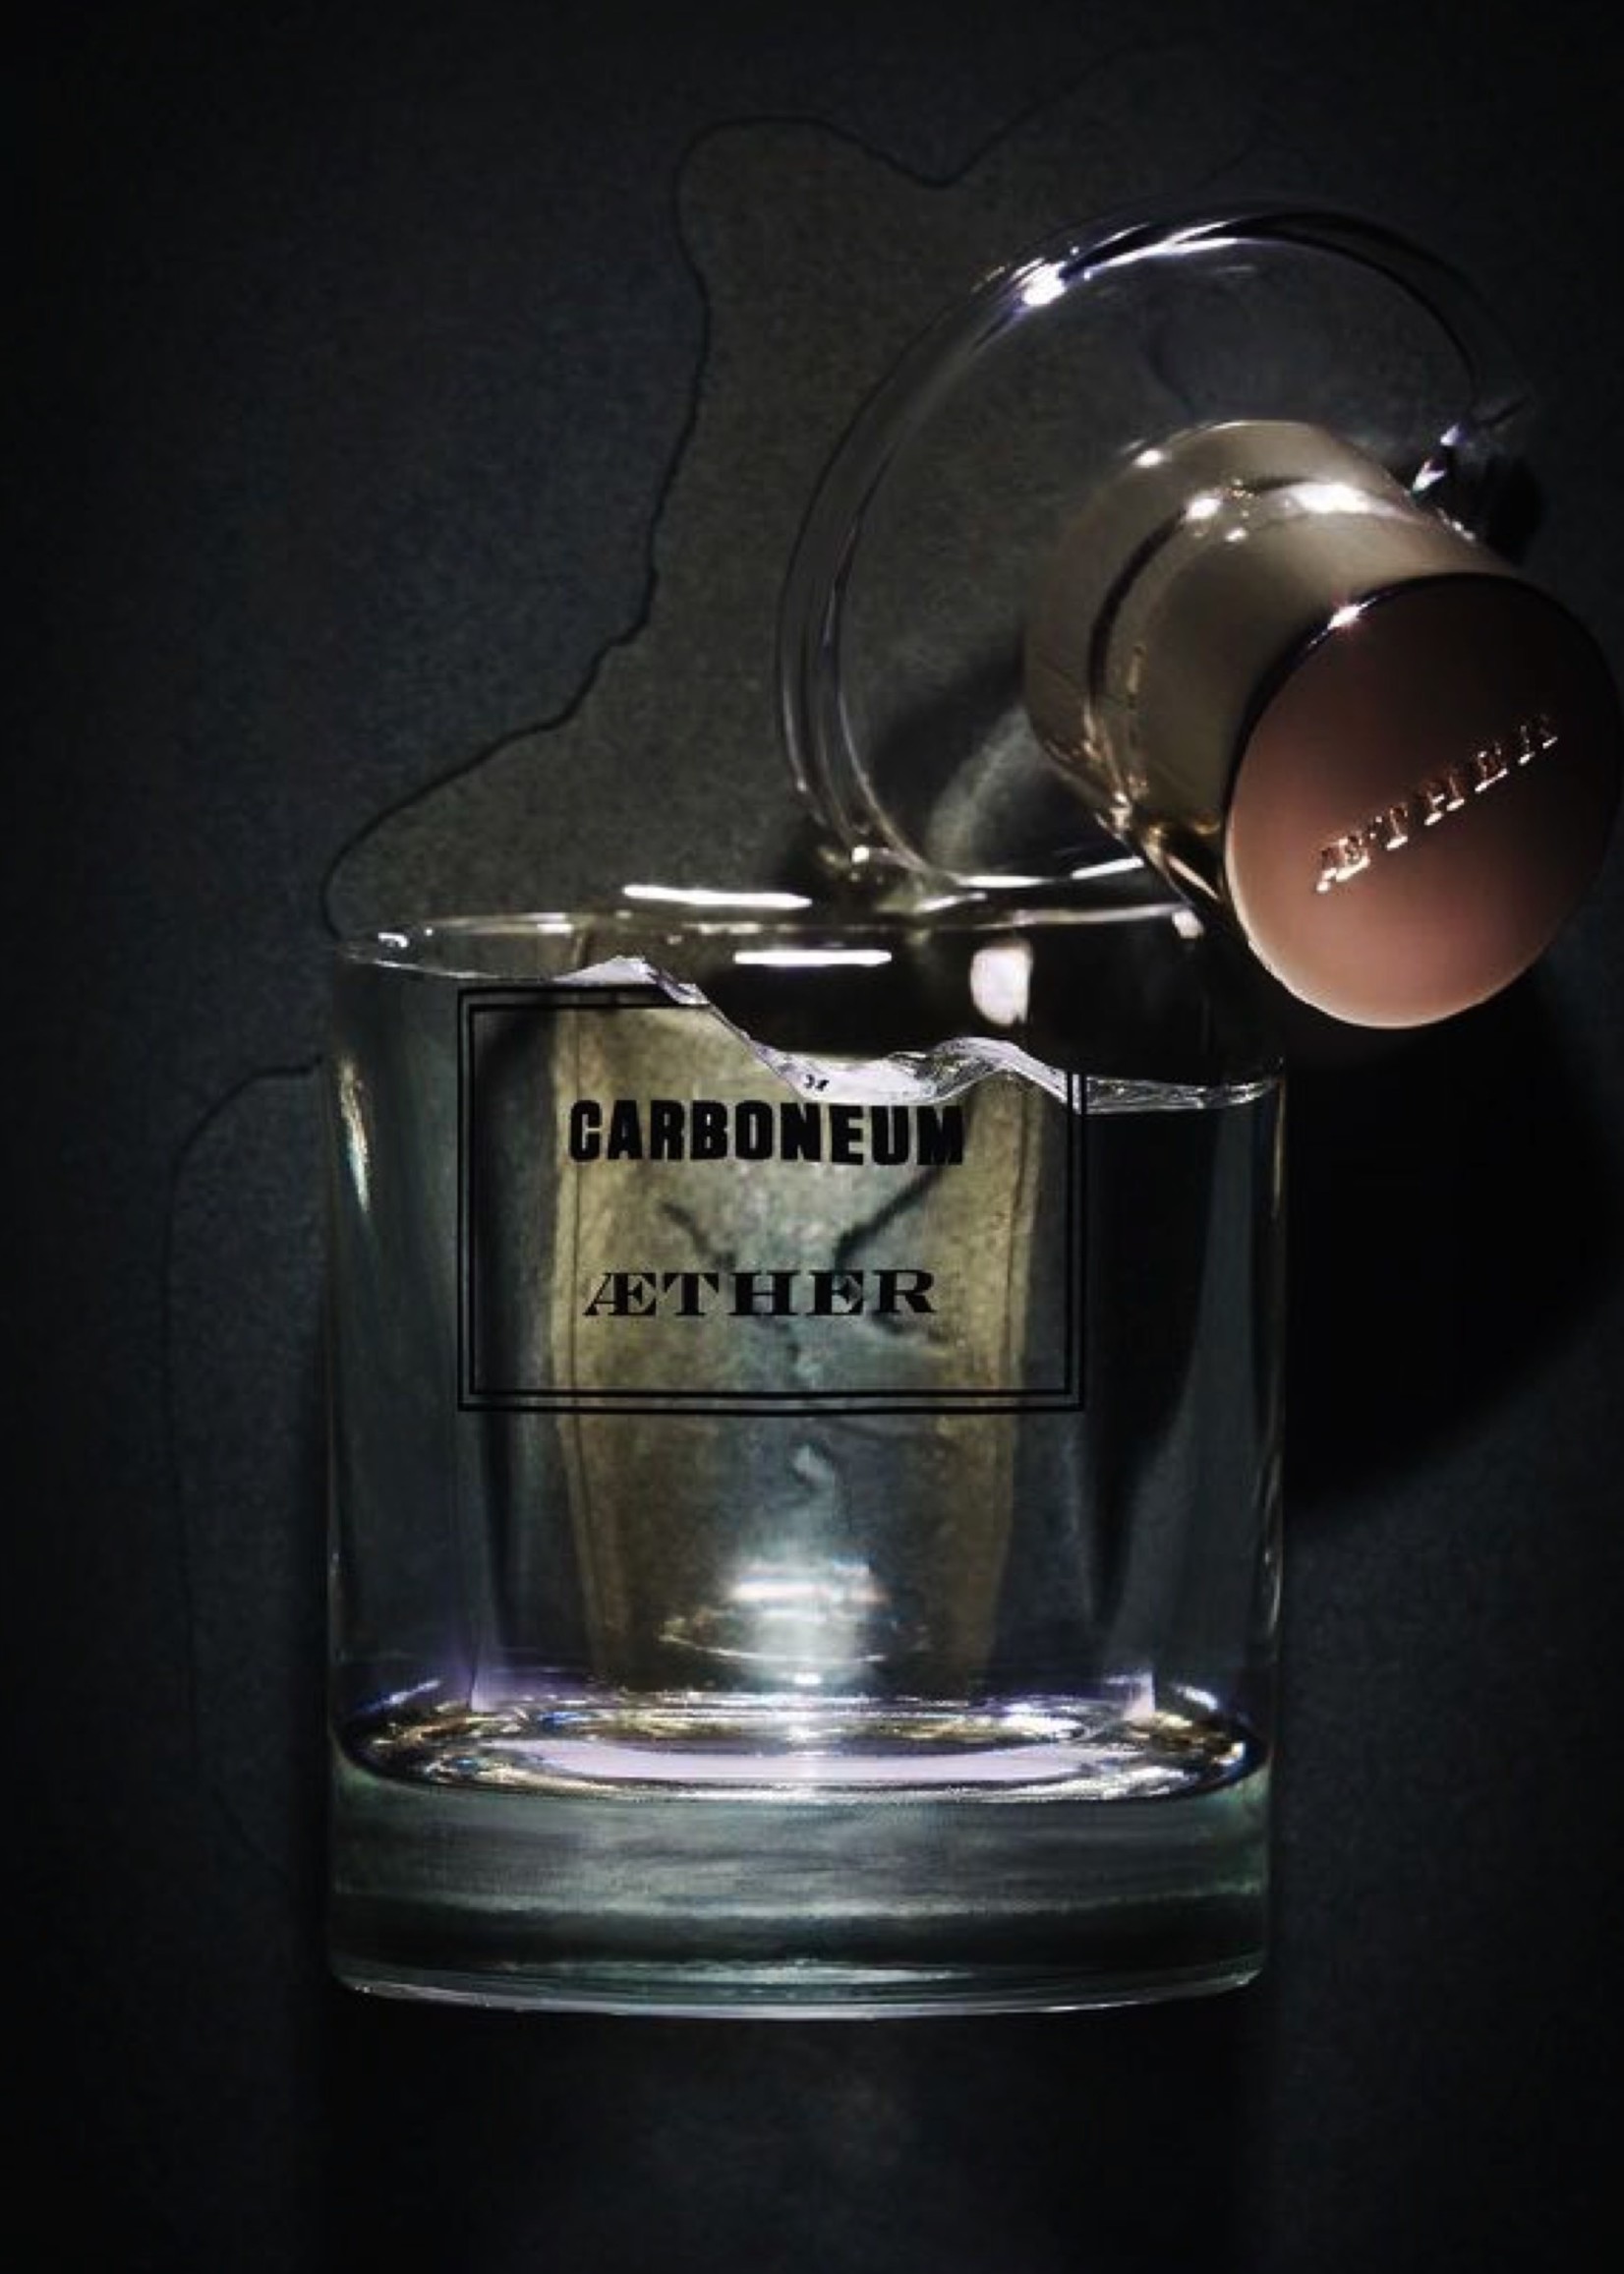 Aether CARBONEUM - Eau de Parfum